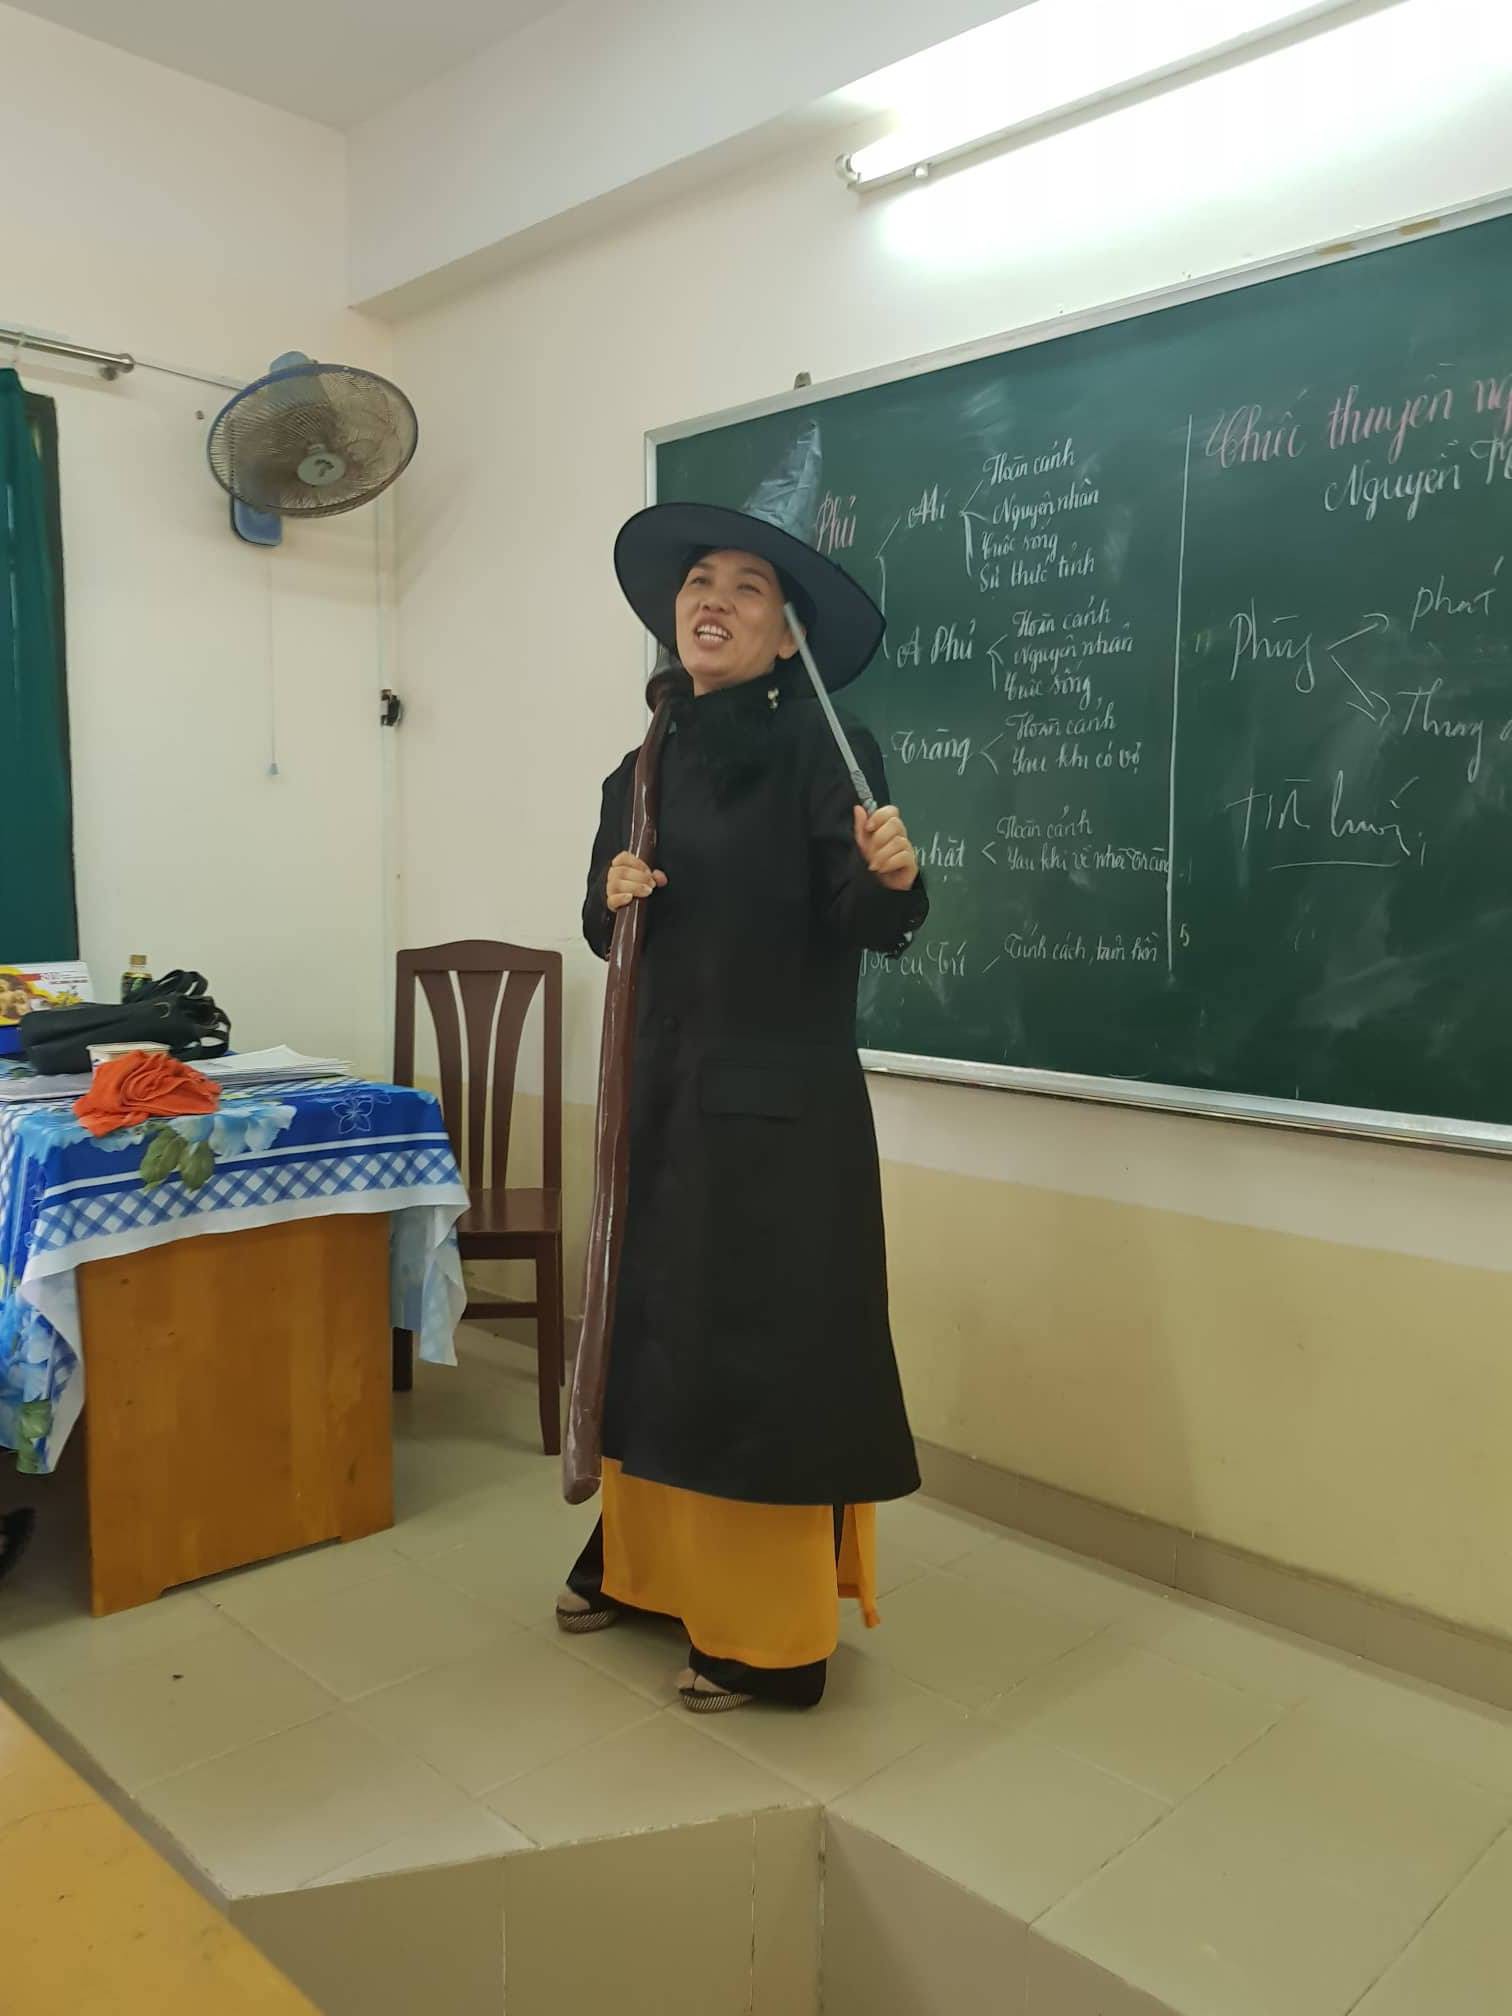 Chuyện cảm động về cô giáo hóa trang thành phù thủy để học sinh có cảm hứng ôn thi đại học môn Văn - Ảnh 3.